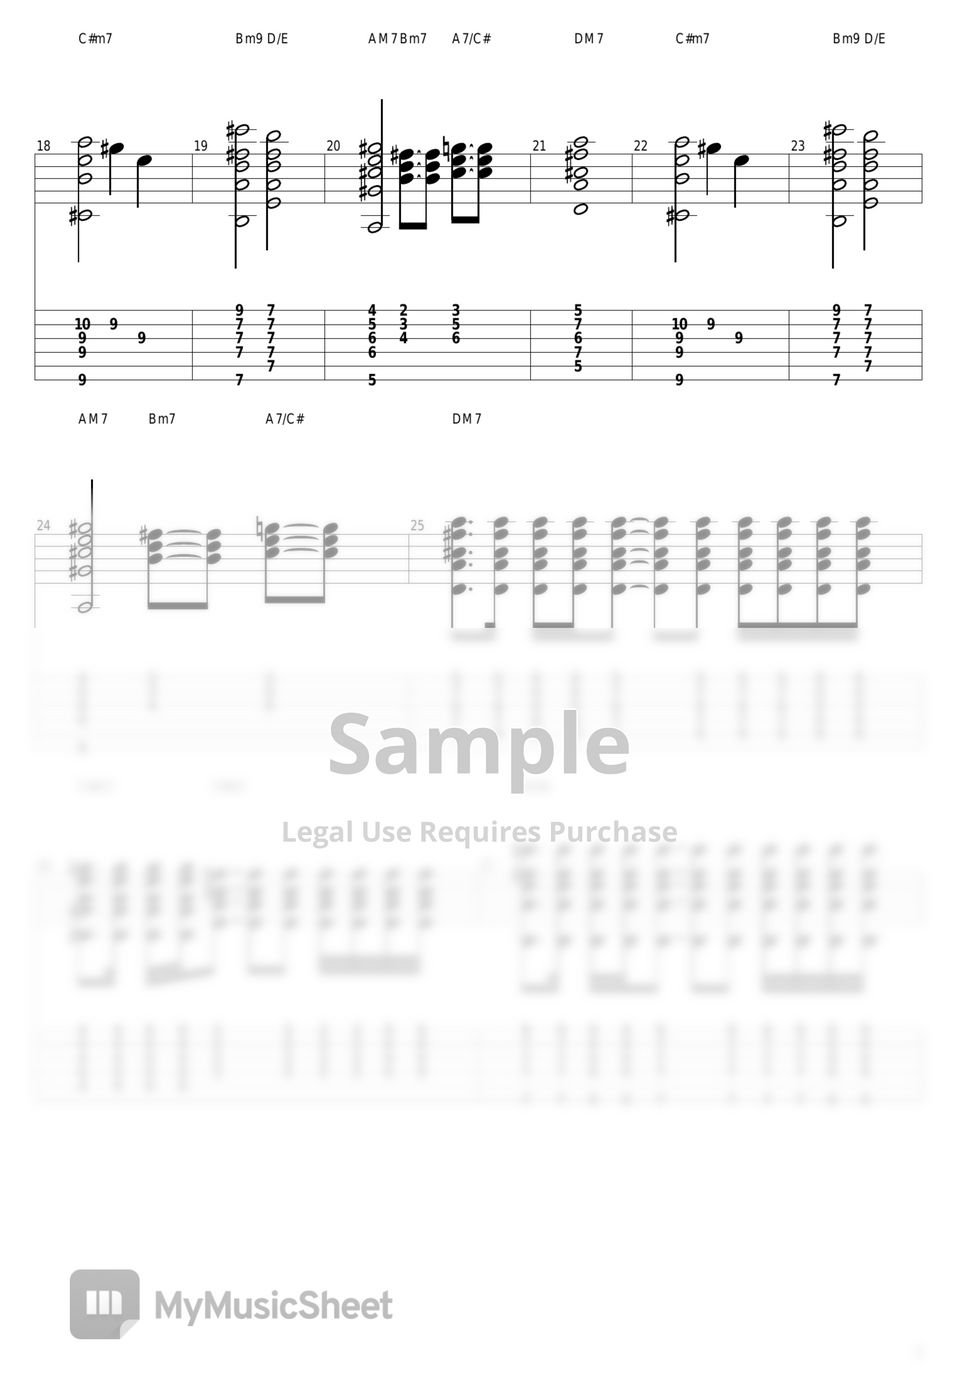 山下達郎 - Music Book Tab + 1staff by guitar cover with tab